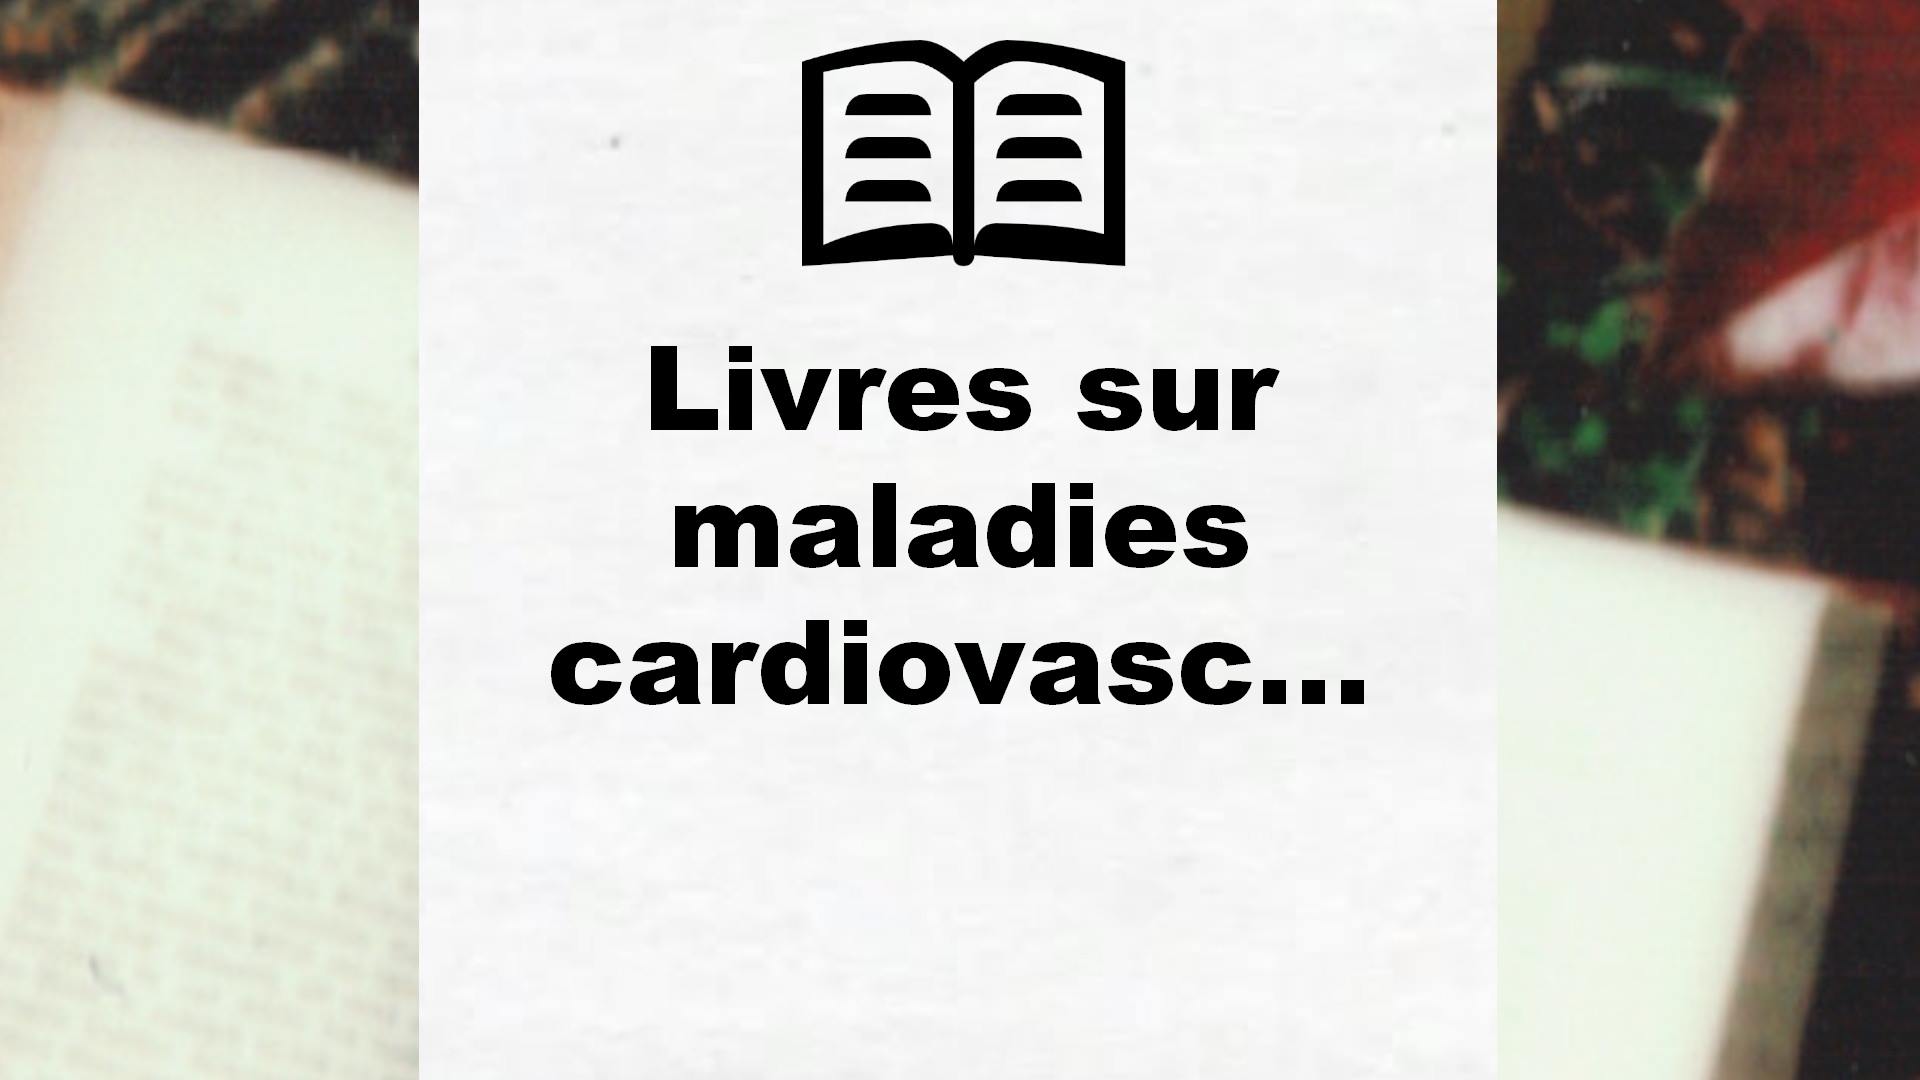 Livres sur maladies cardiovasculaires